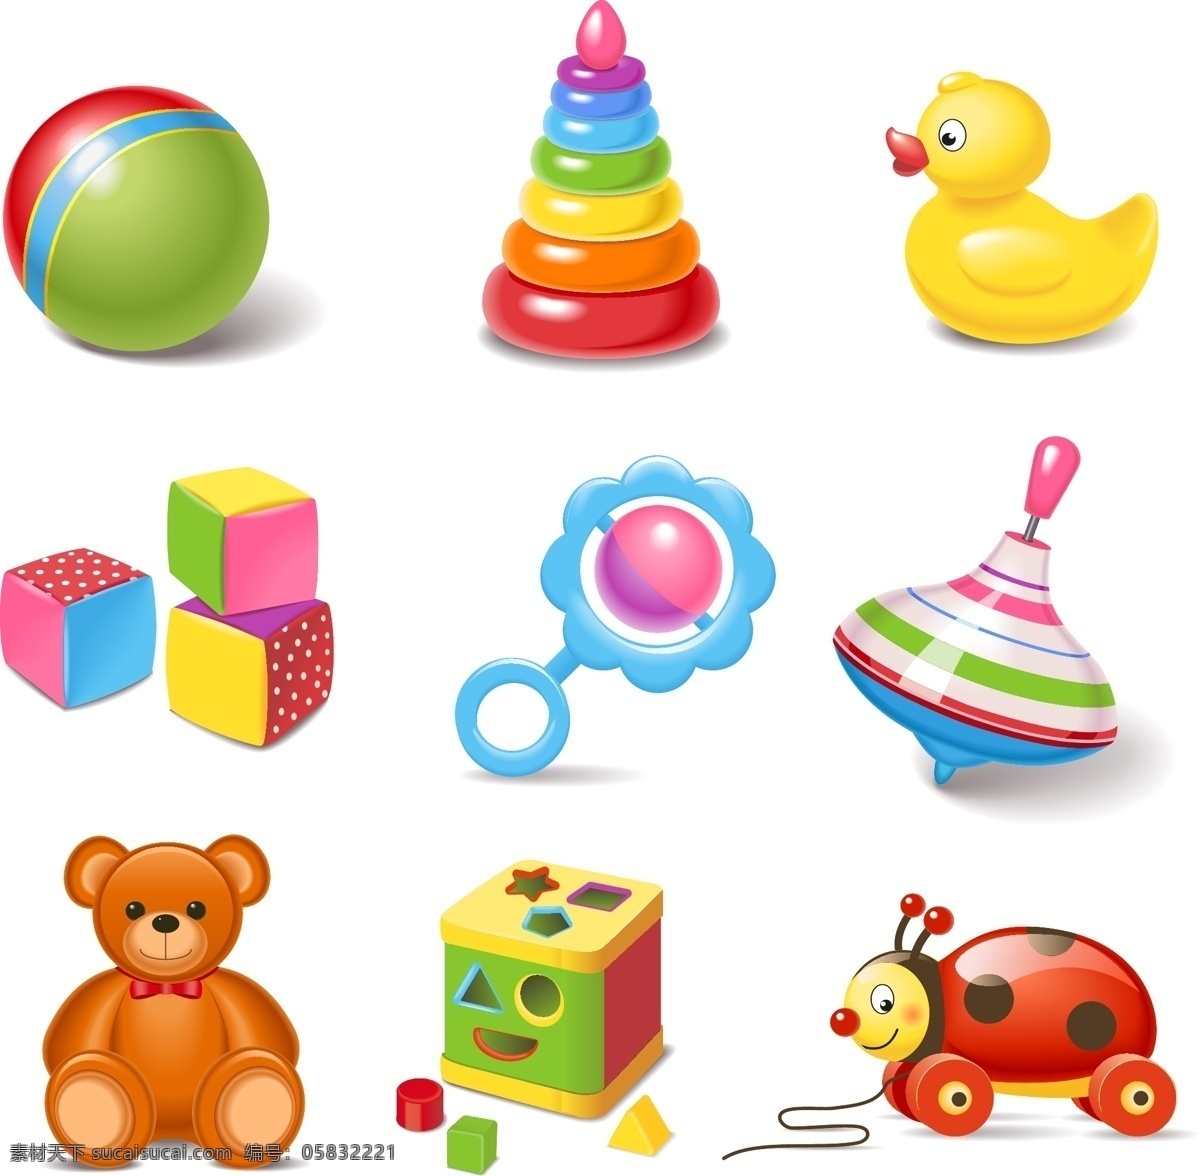 儿童玩具 图标 矢量 儿童玩具图标 矢量素材 小黄鸭 玩具熊 气球 沙包 积木 七星瓢虫 小车 卡通玩具 eps格式